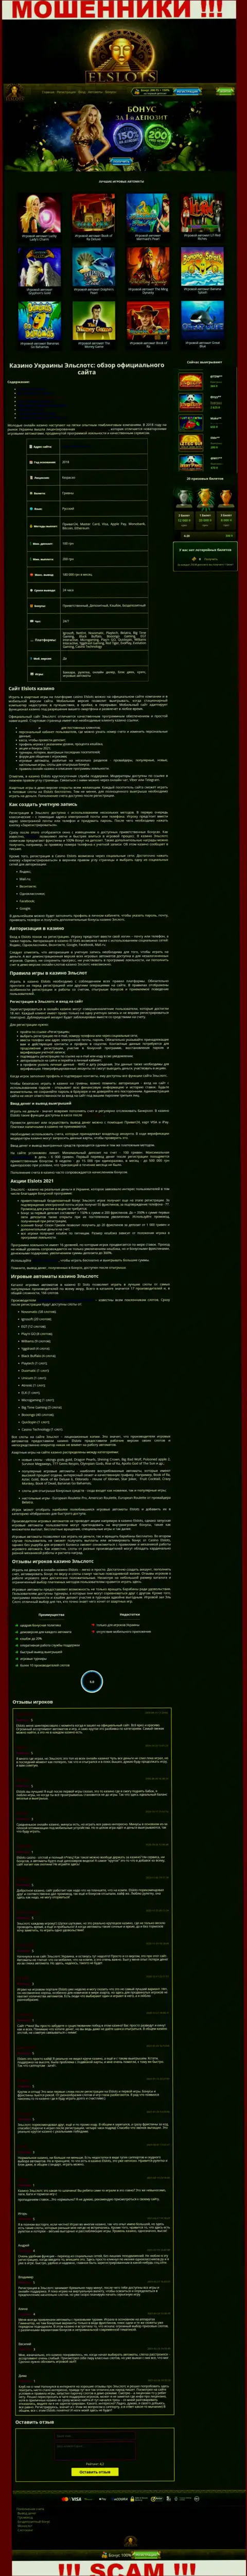 Вид официальной web странички противоправно действующей организации Ел Слотс